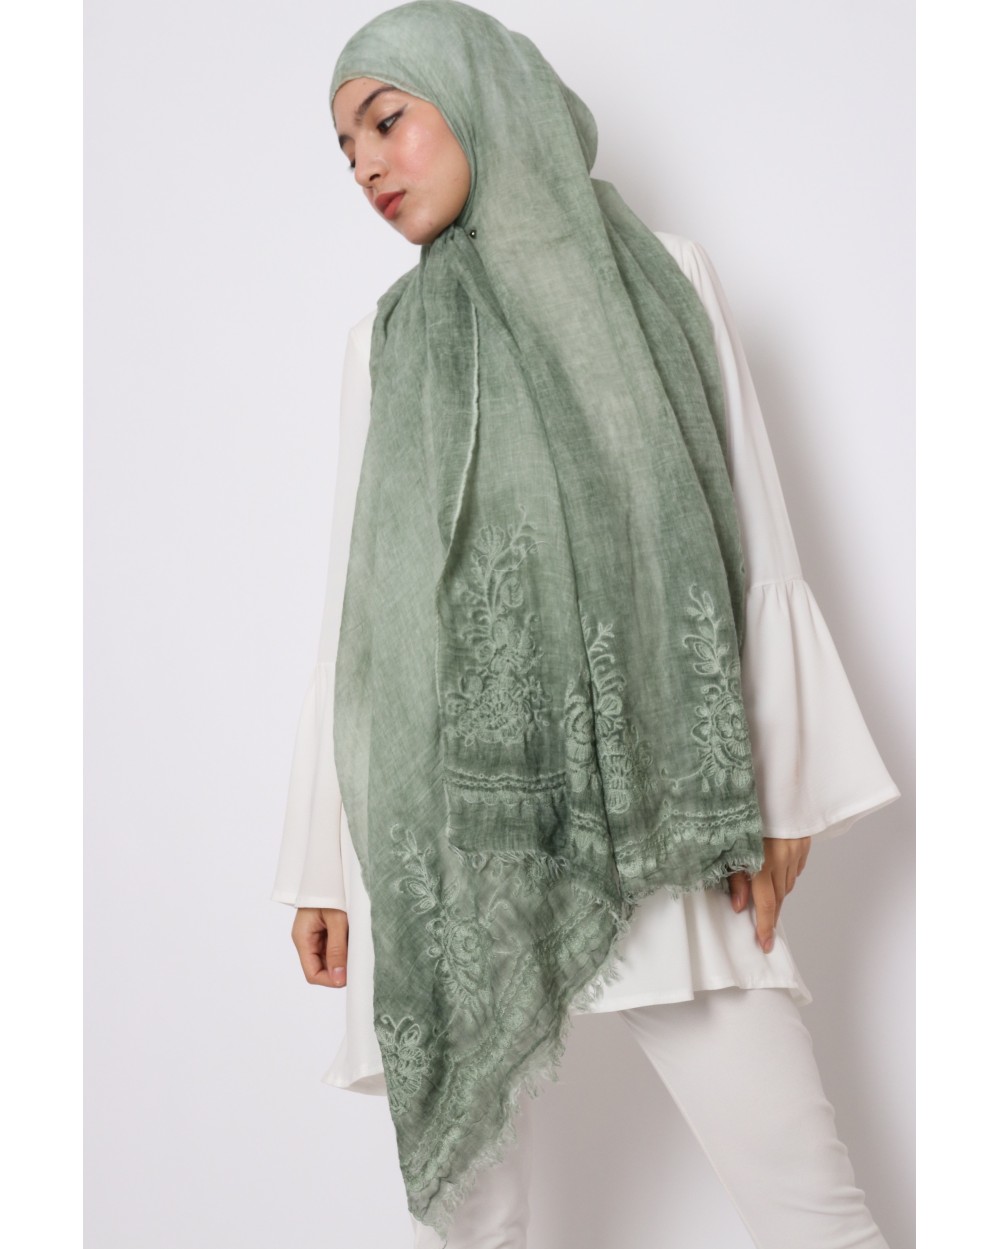 Maxi Hijab Sarah embroidered